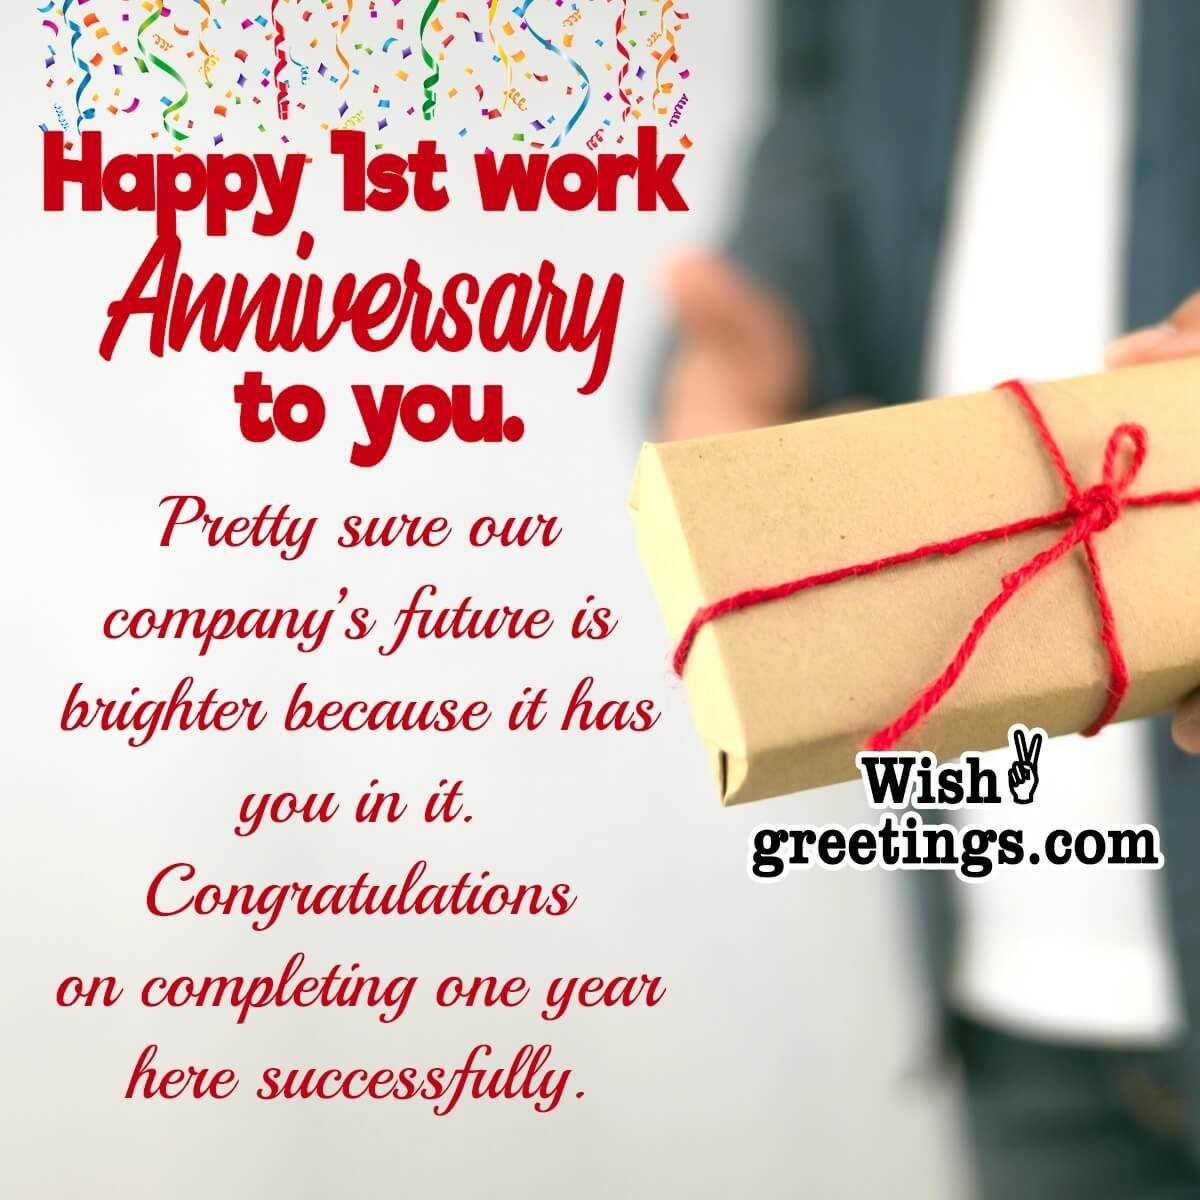 1st-work-anniversary-wishes-wish-greetings